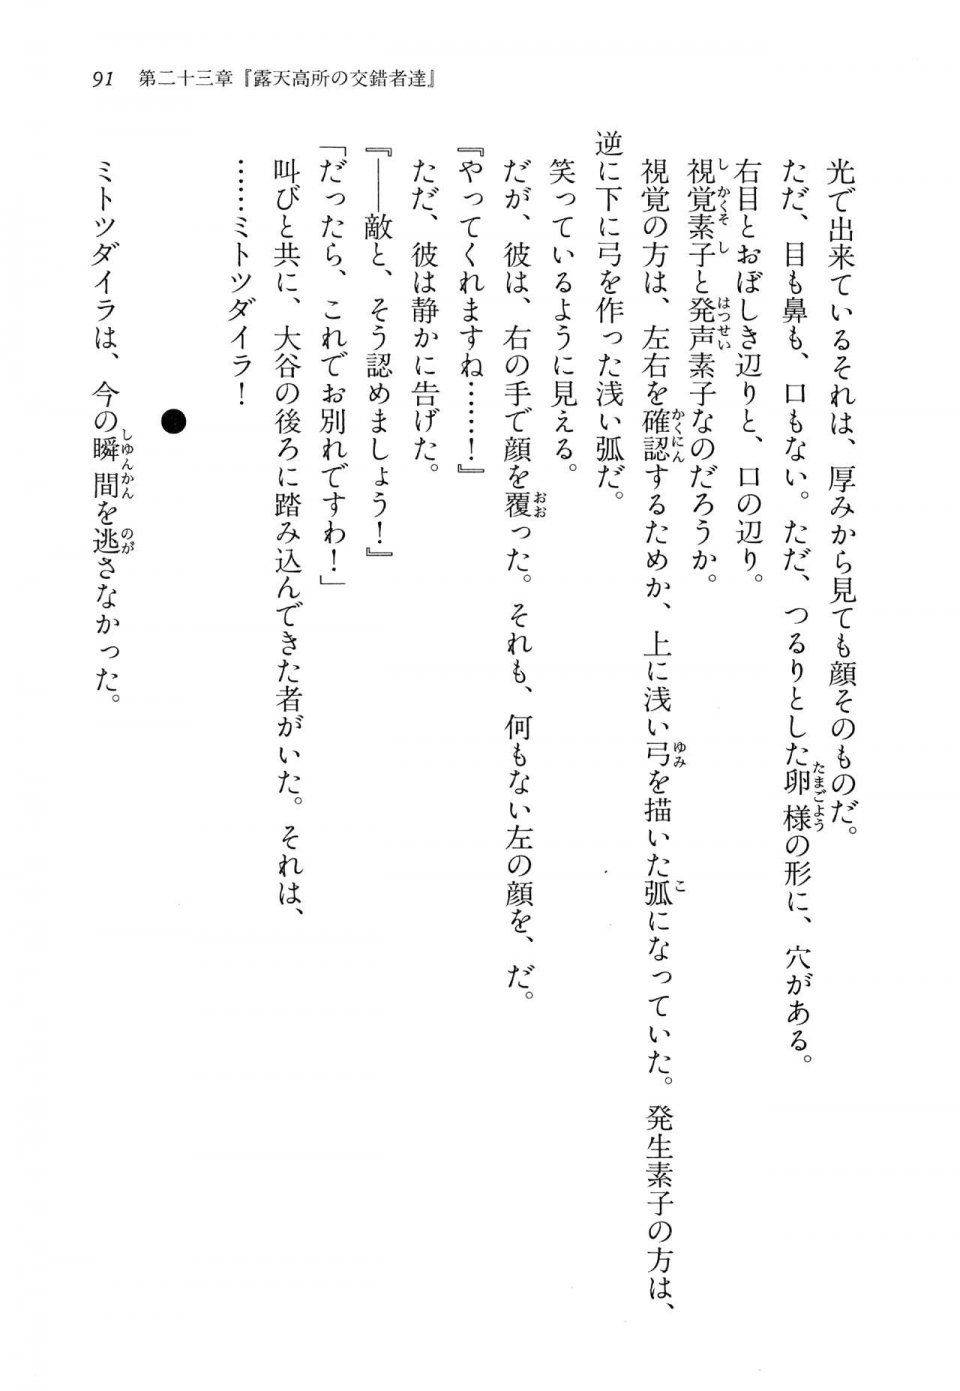 Kyoukai Senjou no Horizon LN Vol 14(6B) - Photo #91